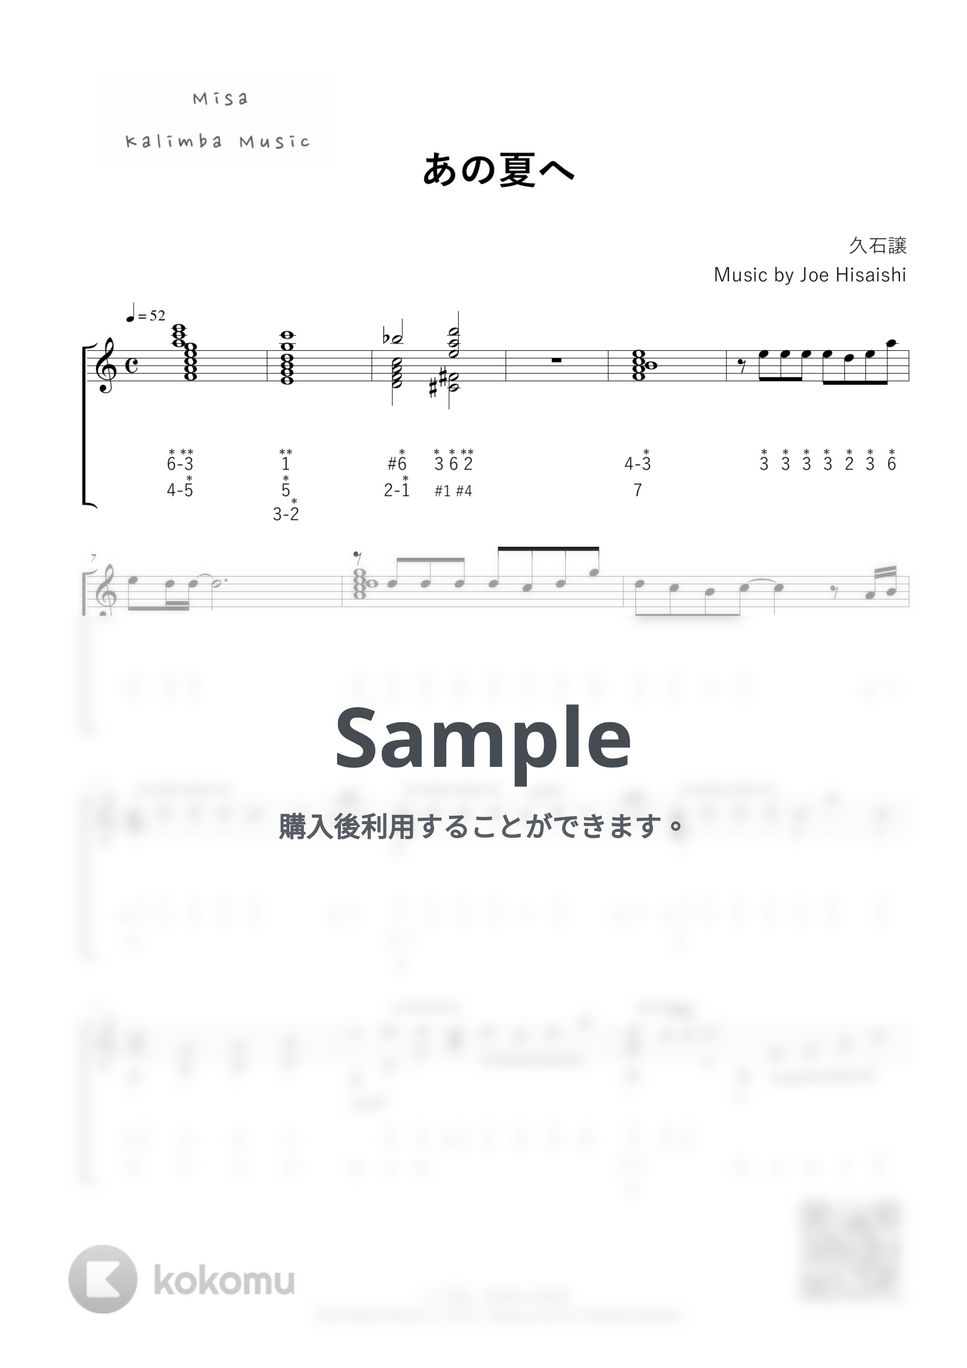 久石譲 - あの夏へ / 34音カリンバ / 数字表記 (模範演奏付き) by Misa / Kalimba Music